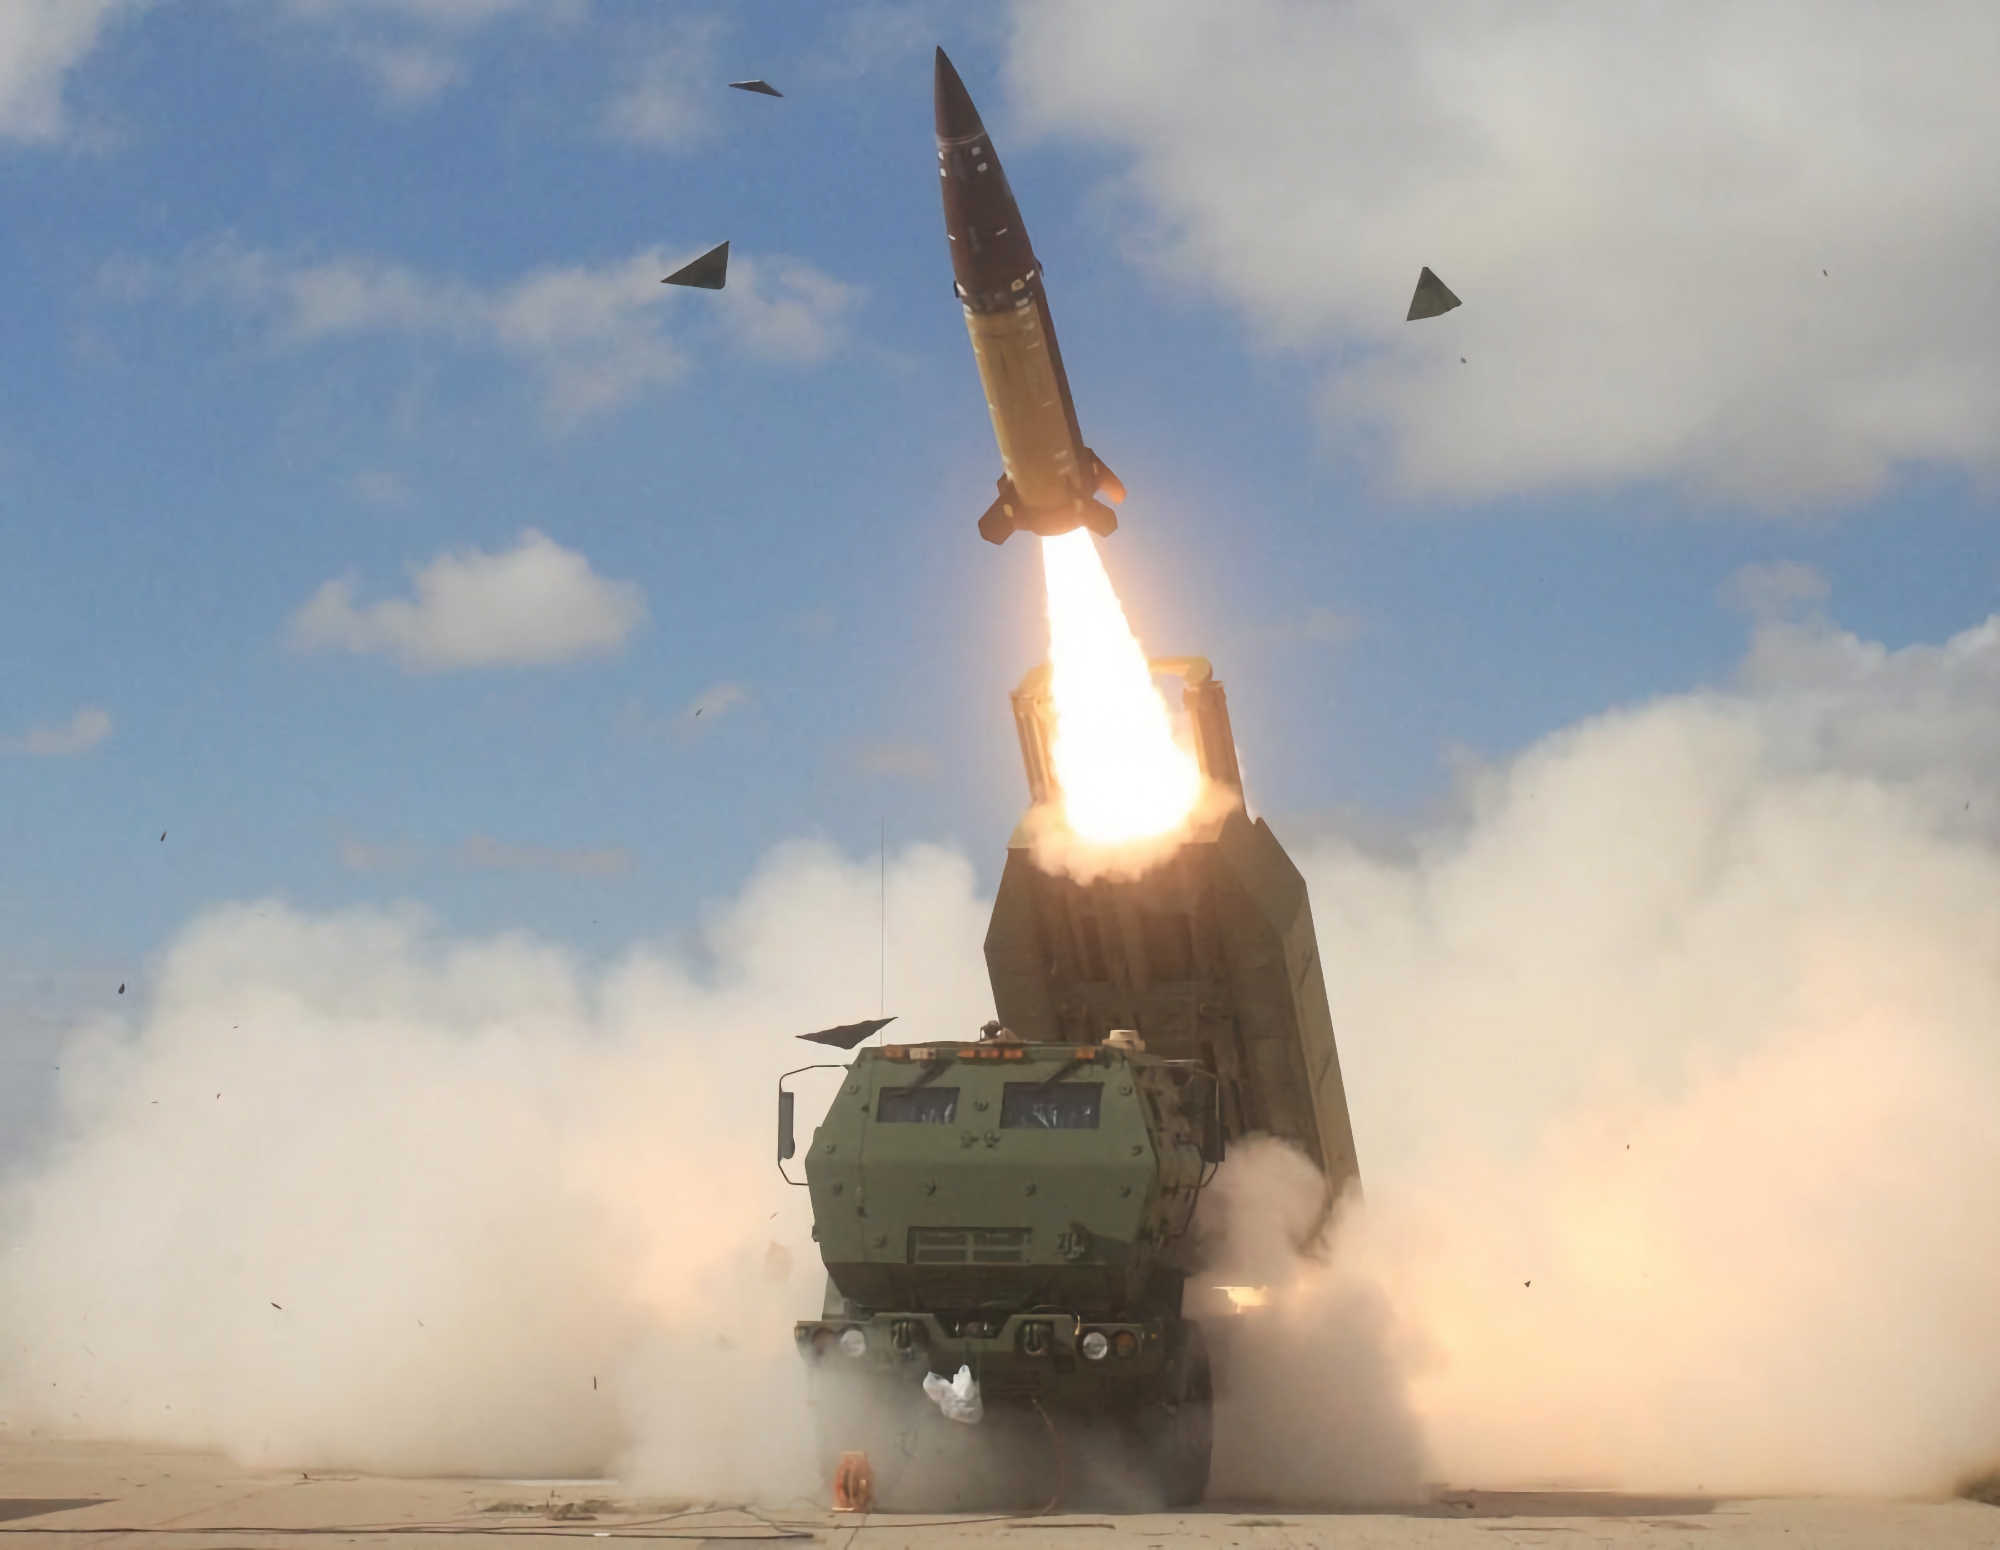 USA overførte i al hemmelighed ATACMS ballistiske missiler med en rækkevidde på 165 kilometer til Ukraine, og AFU brugte dem til at angribe russiske flyvepladser.